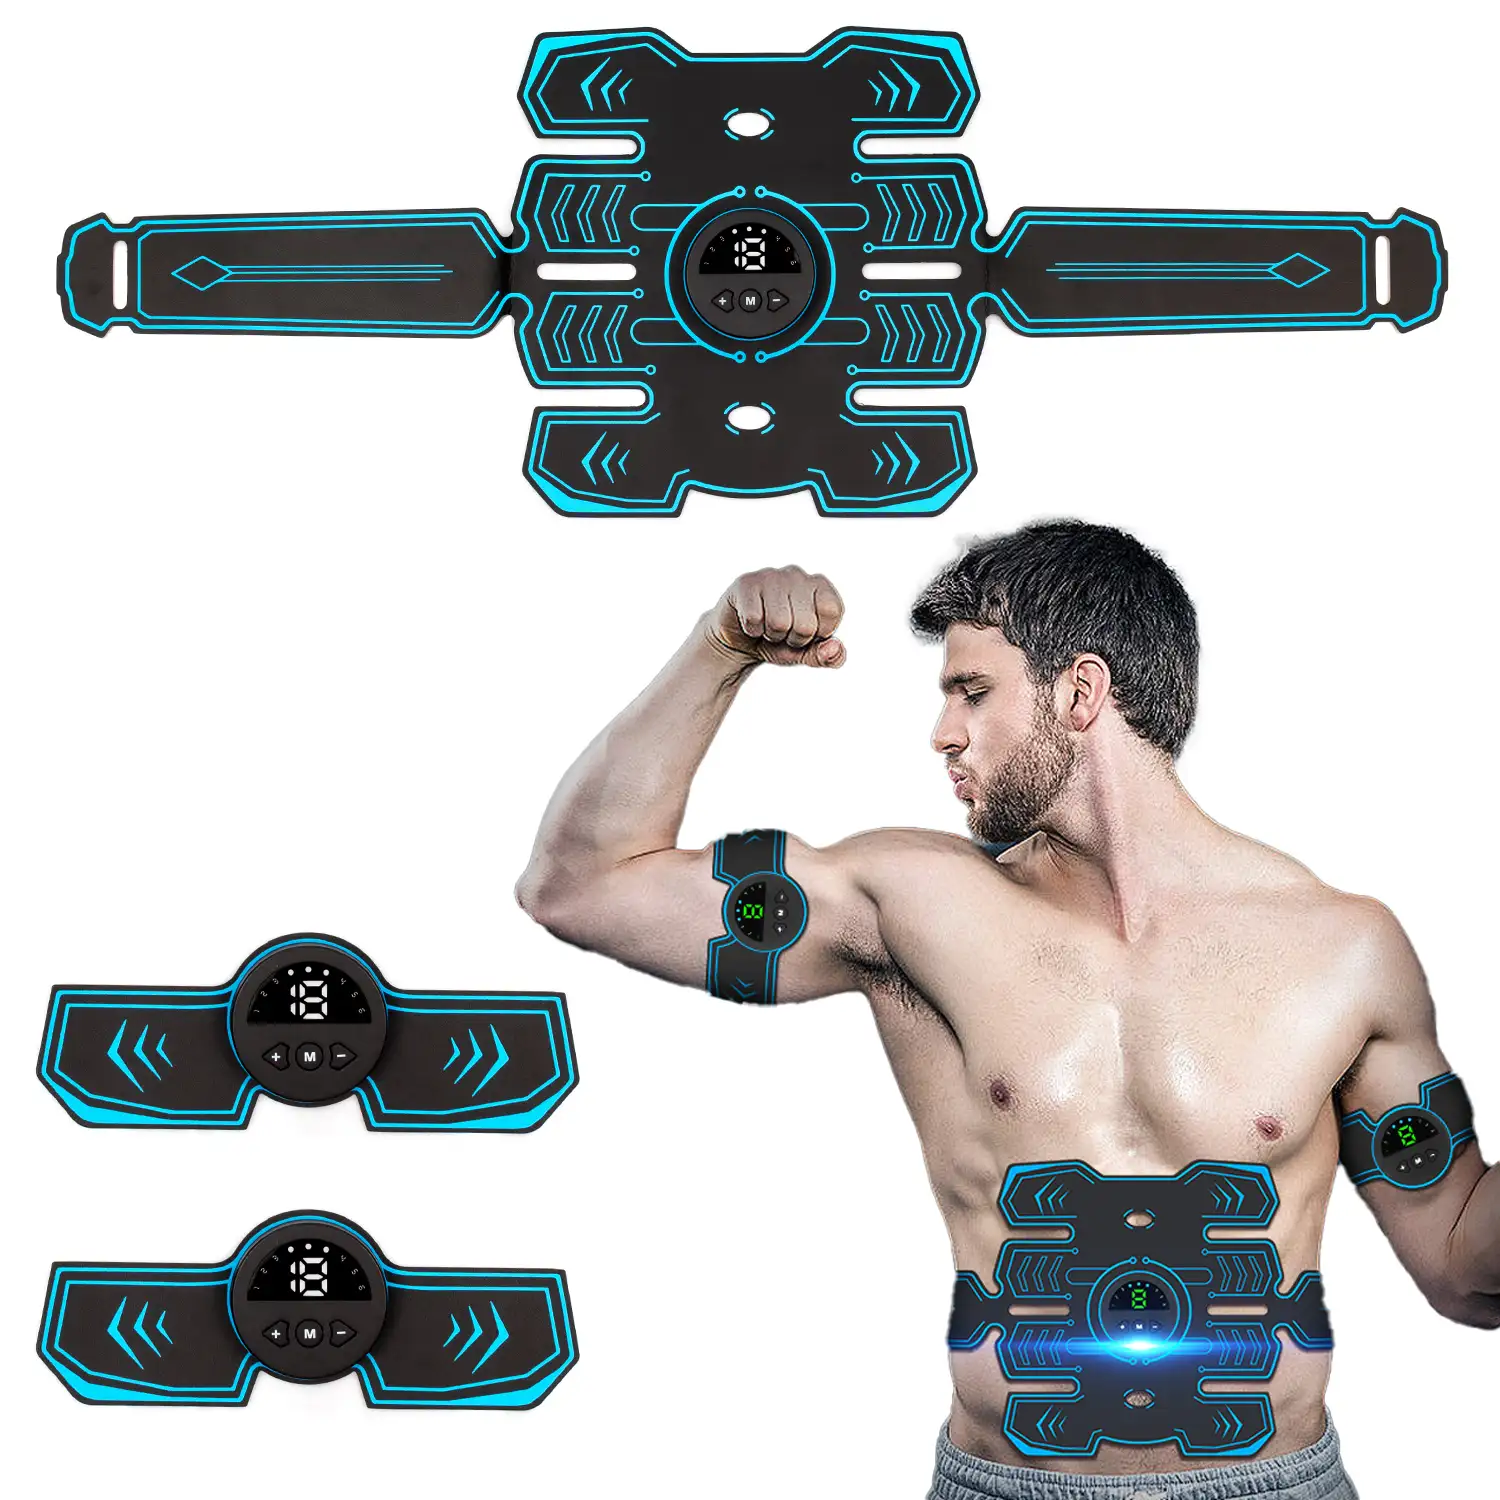 Estimulador electrónico y masaje EMS inteligente O88Q. Para abdominales, brazos y piernas. Batería recargable.